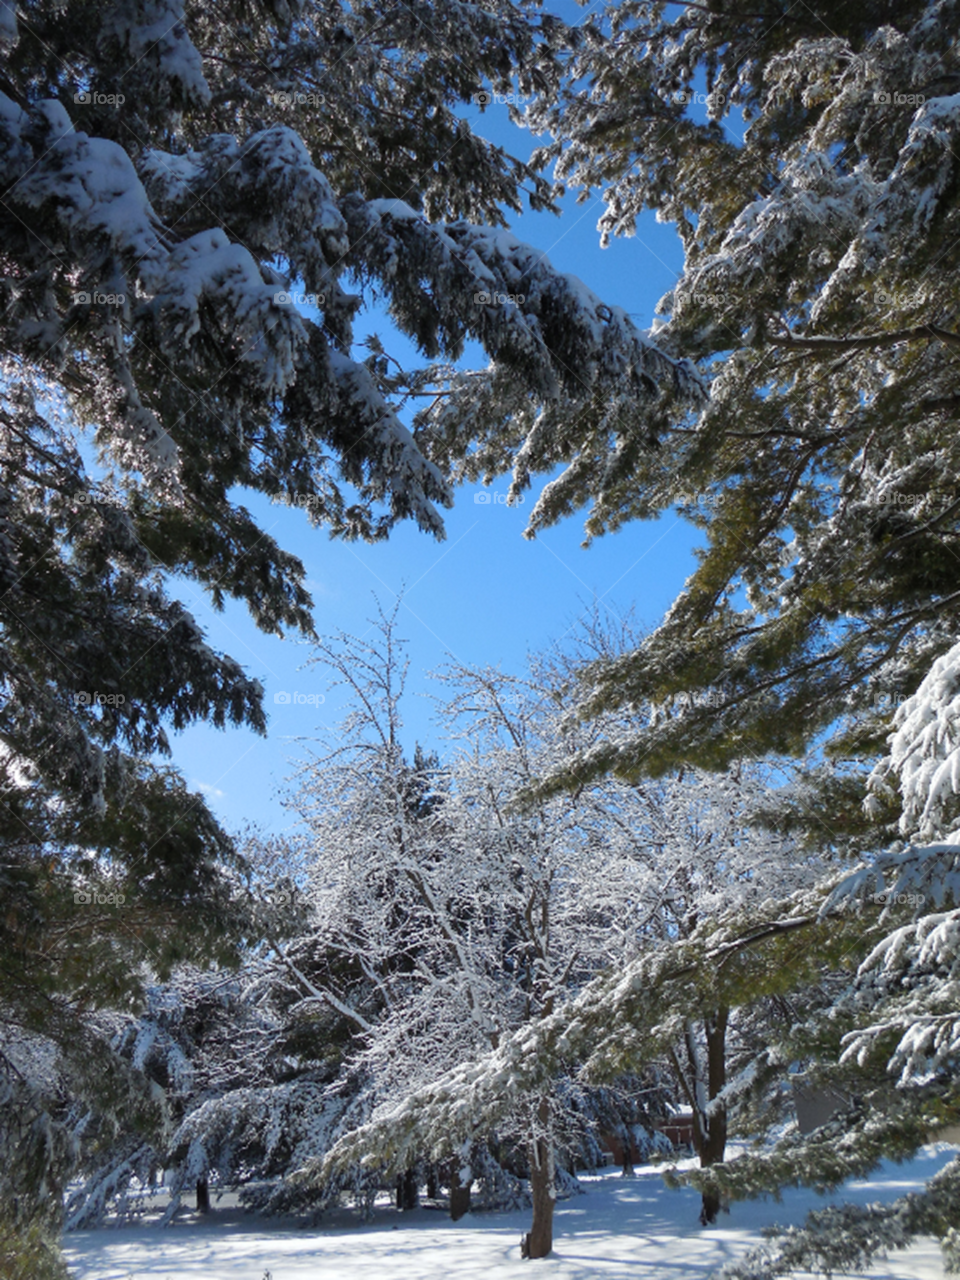 Snowy trees blue sky peeking